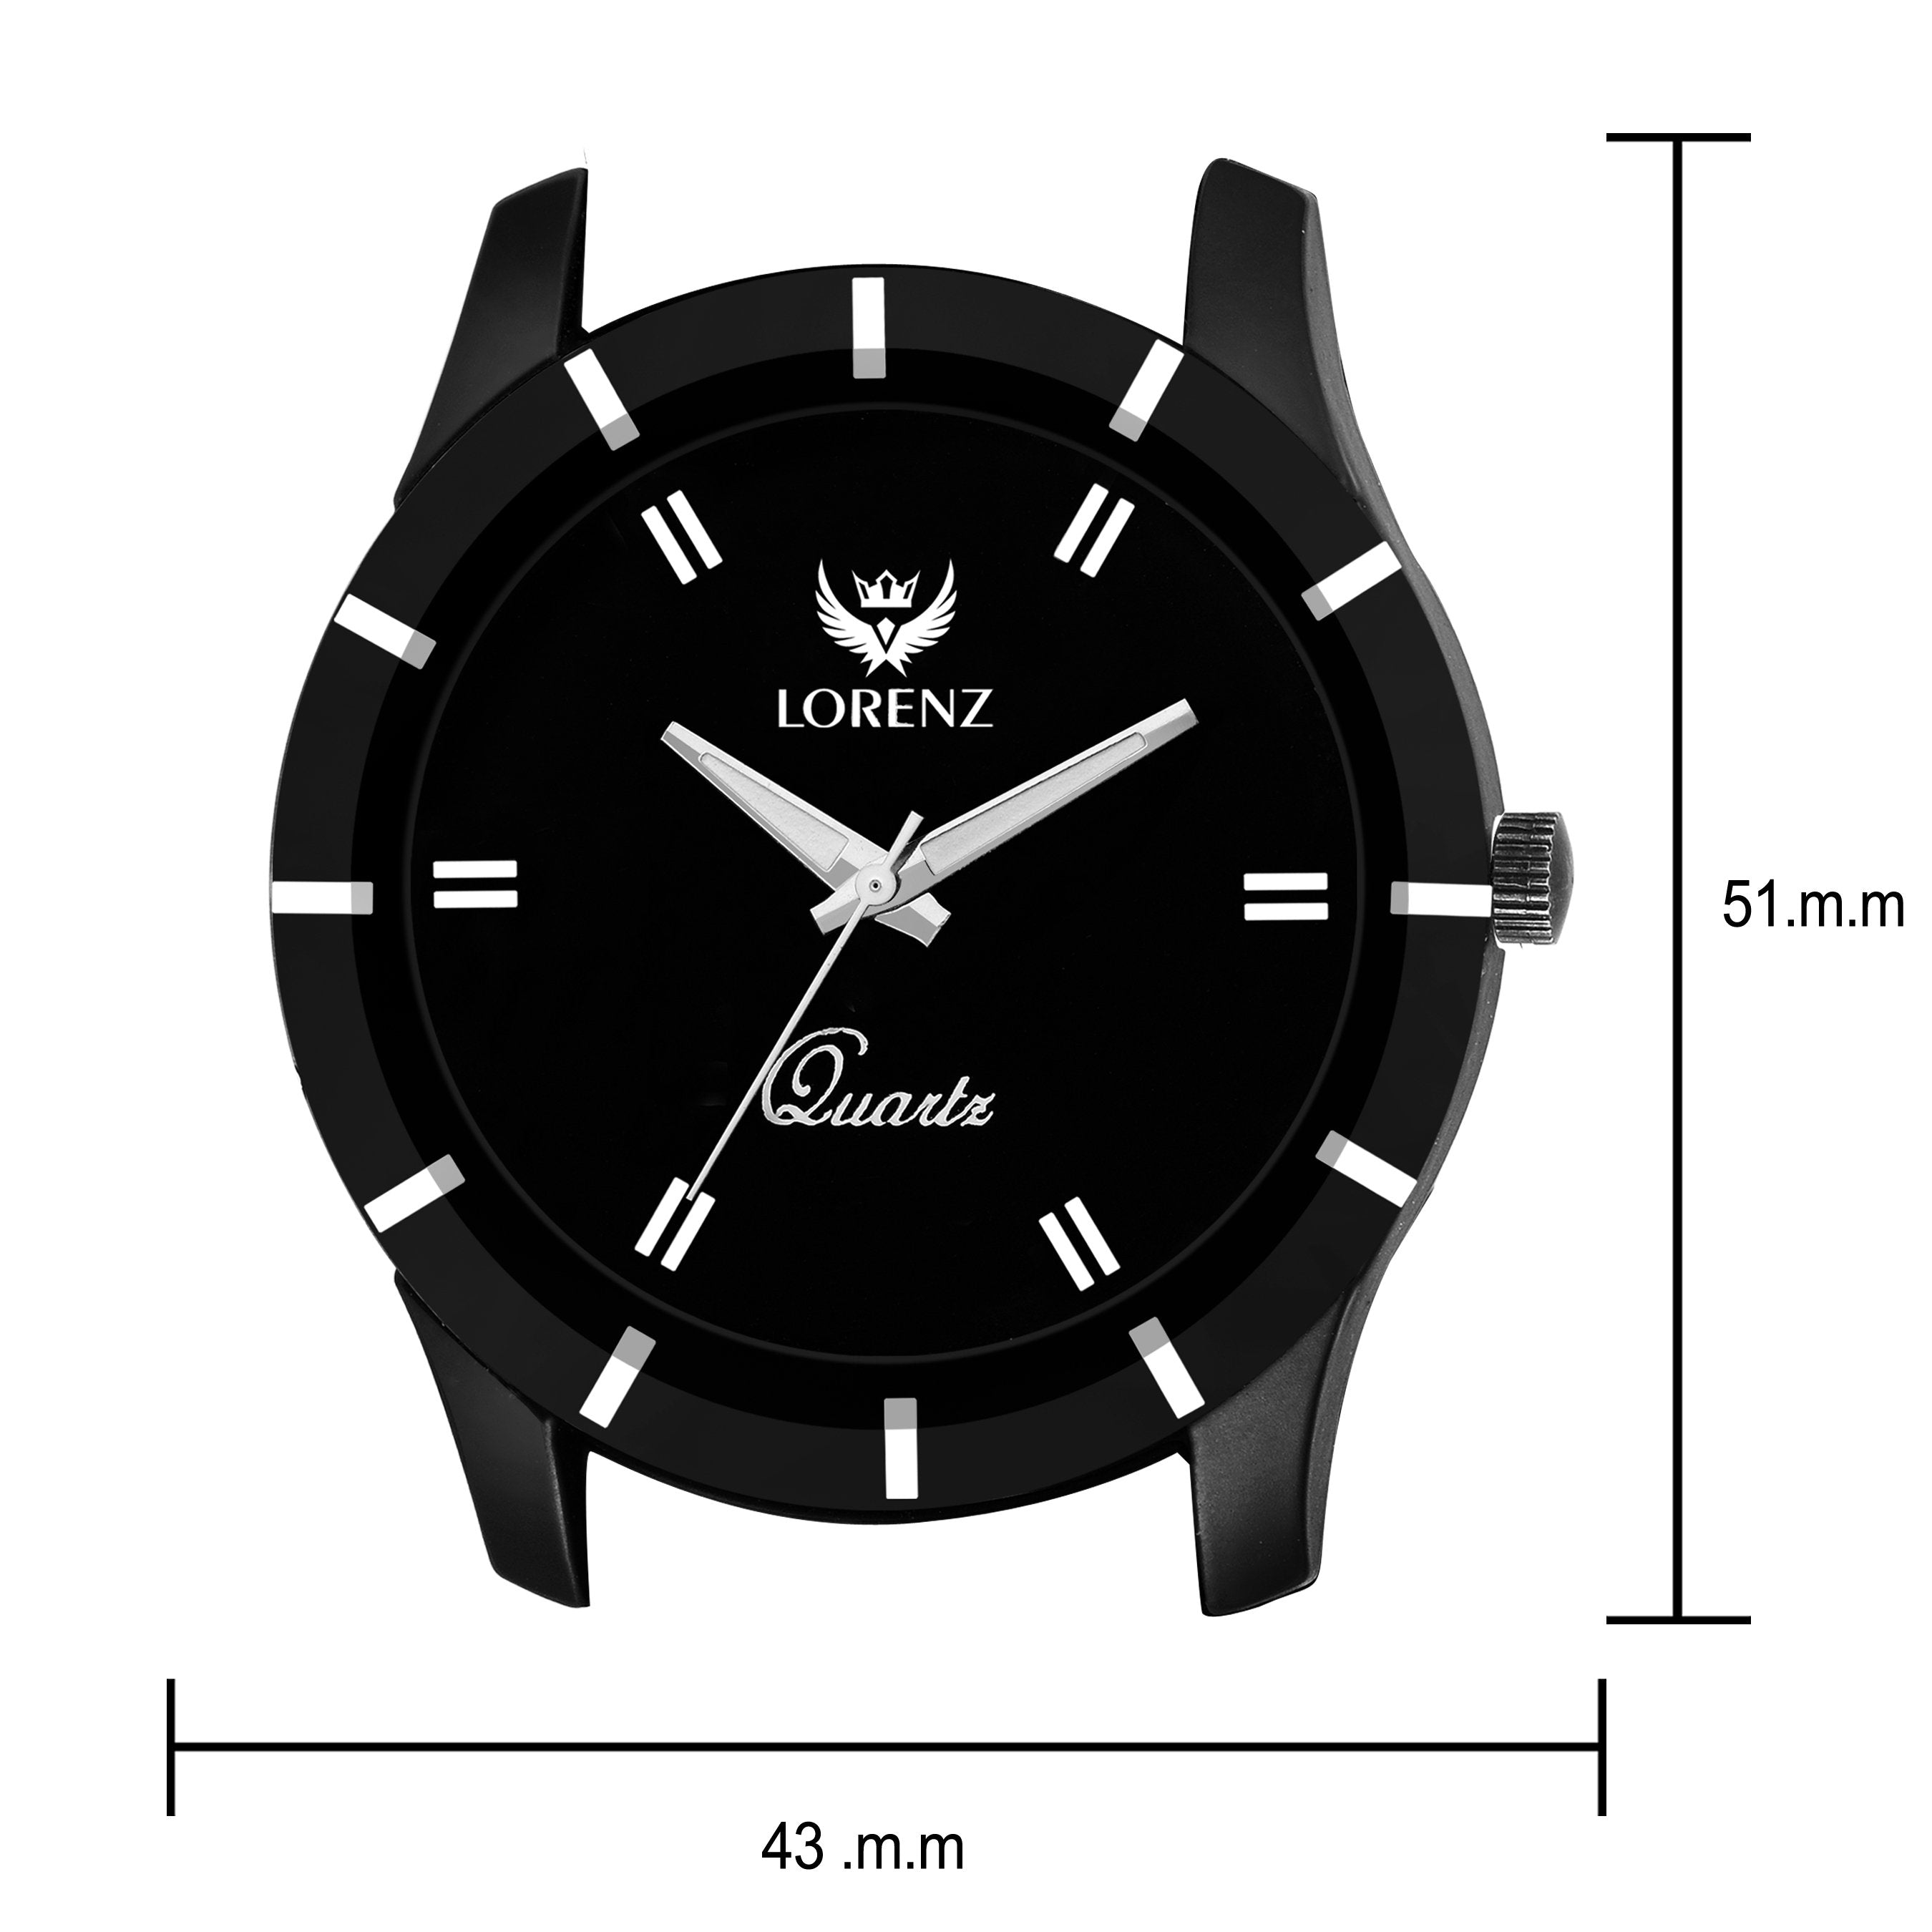 Lorenz Black Dial Men's Analog Watch- MK-1072A - Lorenz Fashion